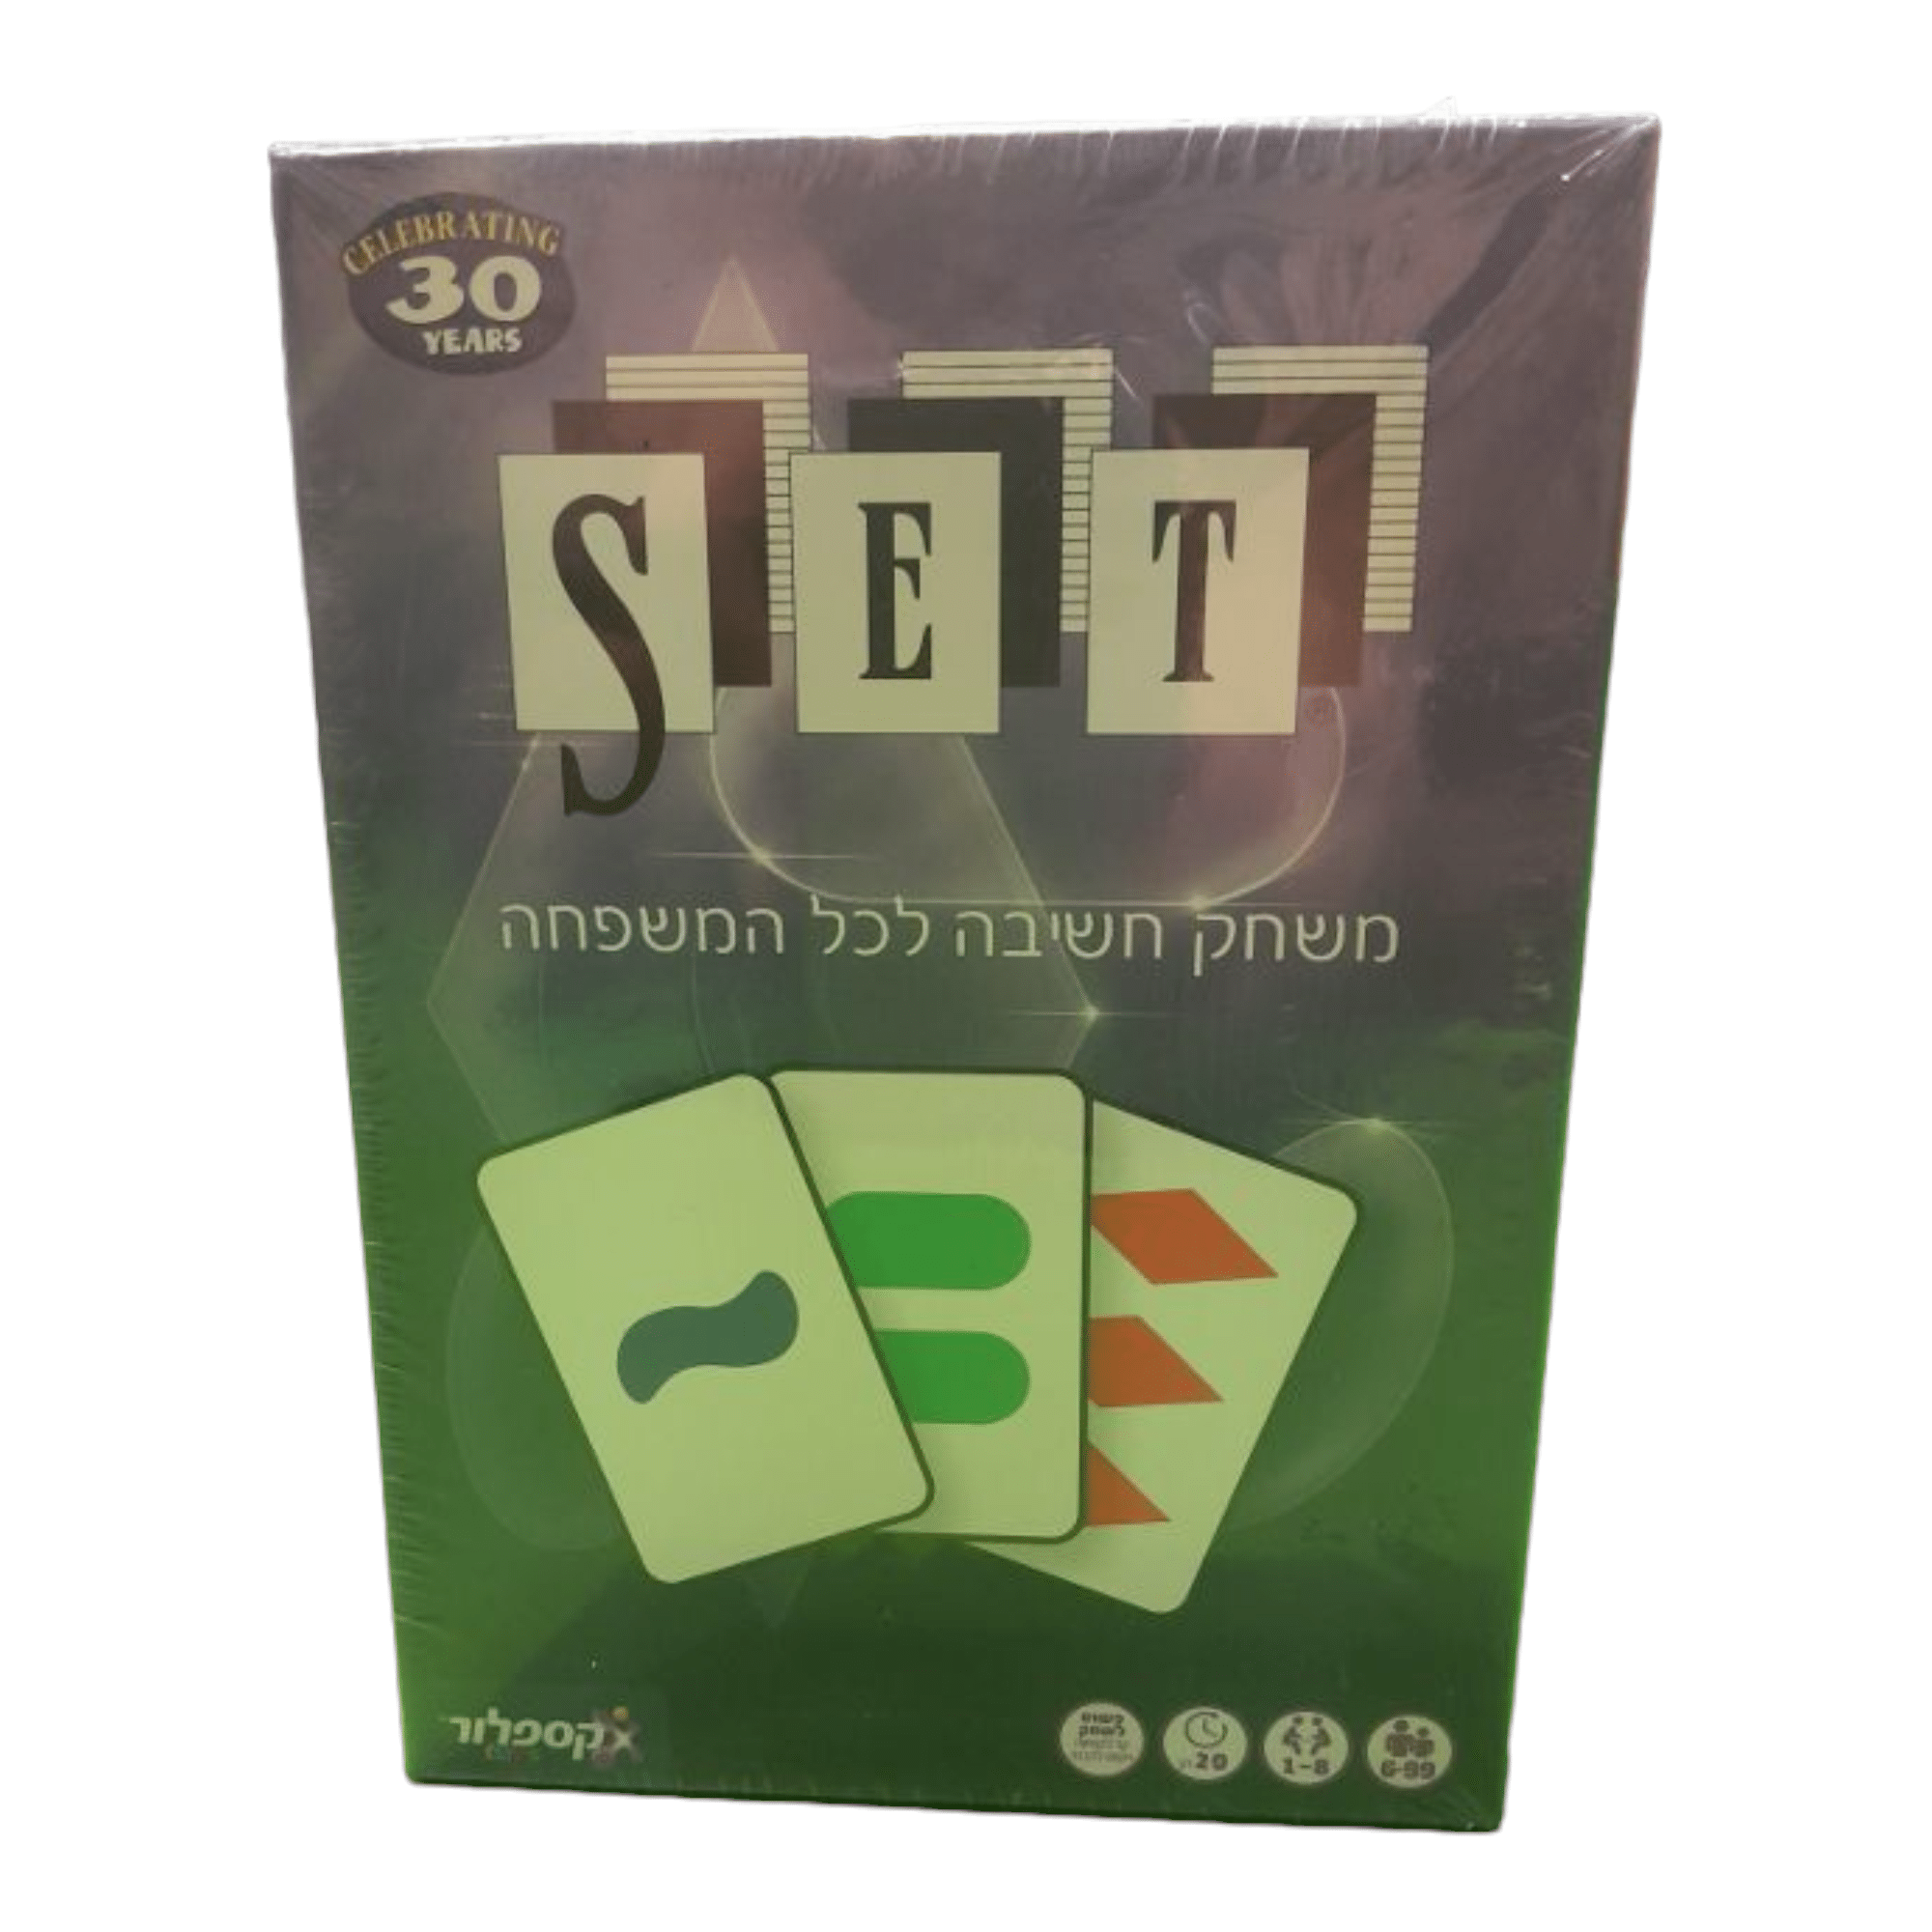 משחק קלפים SET לכל המשפחה תחרותי לחידוד המחשבה ופיתוח התפיסה המרחבית